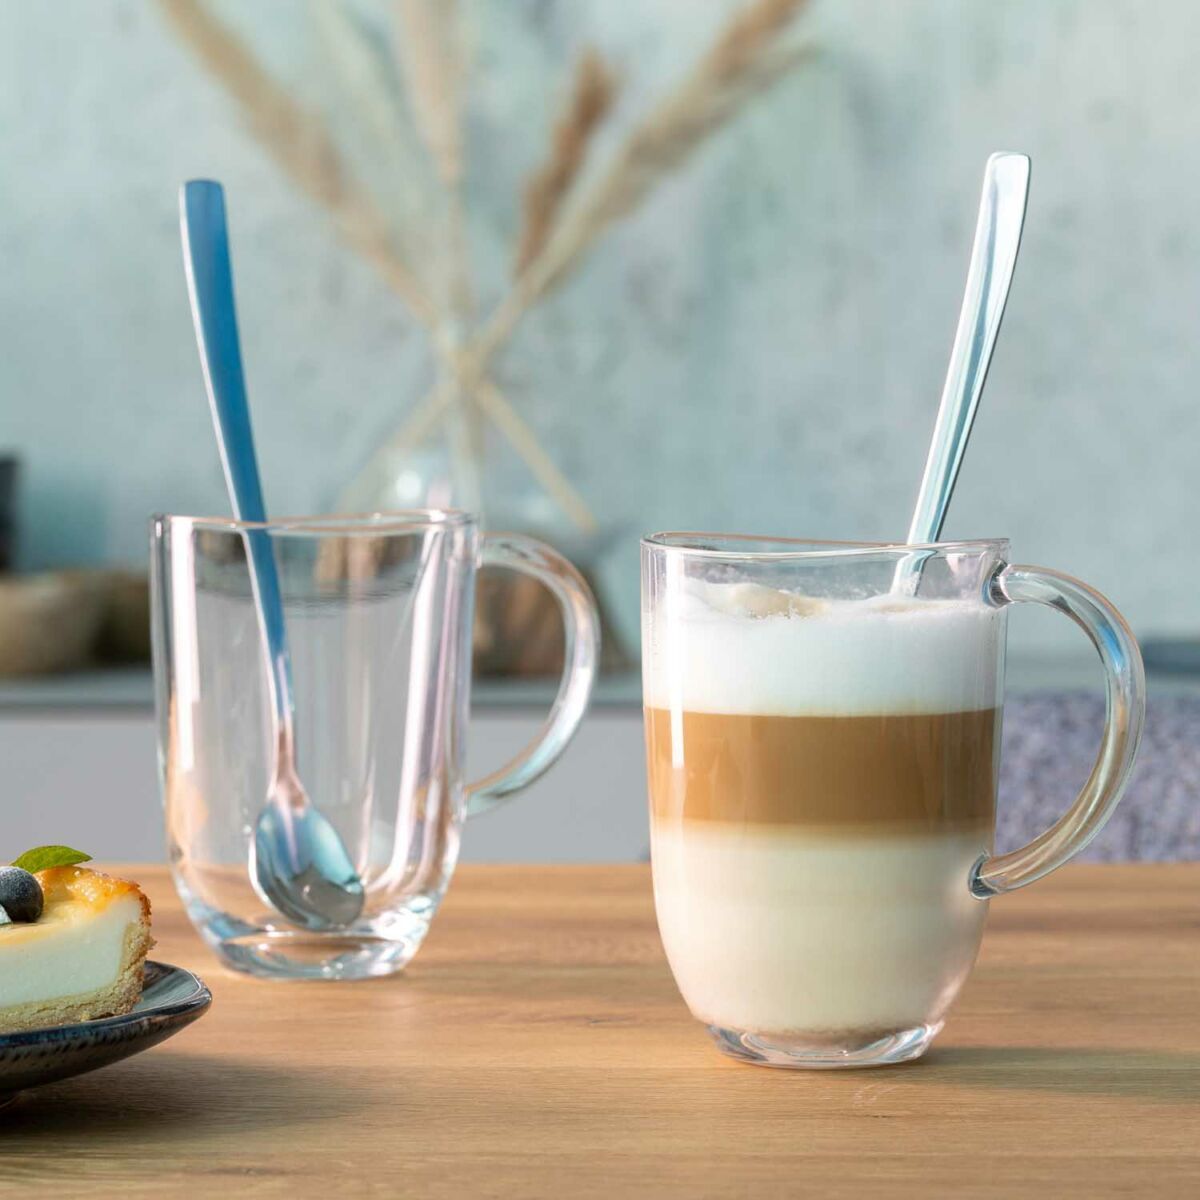 LEONARDO NAPOLI latte macchiatós szett kanállal 2személyes 4részes